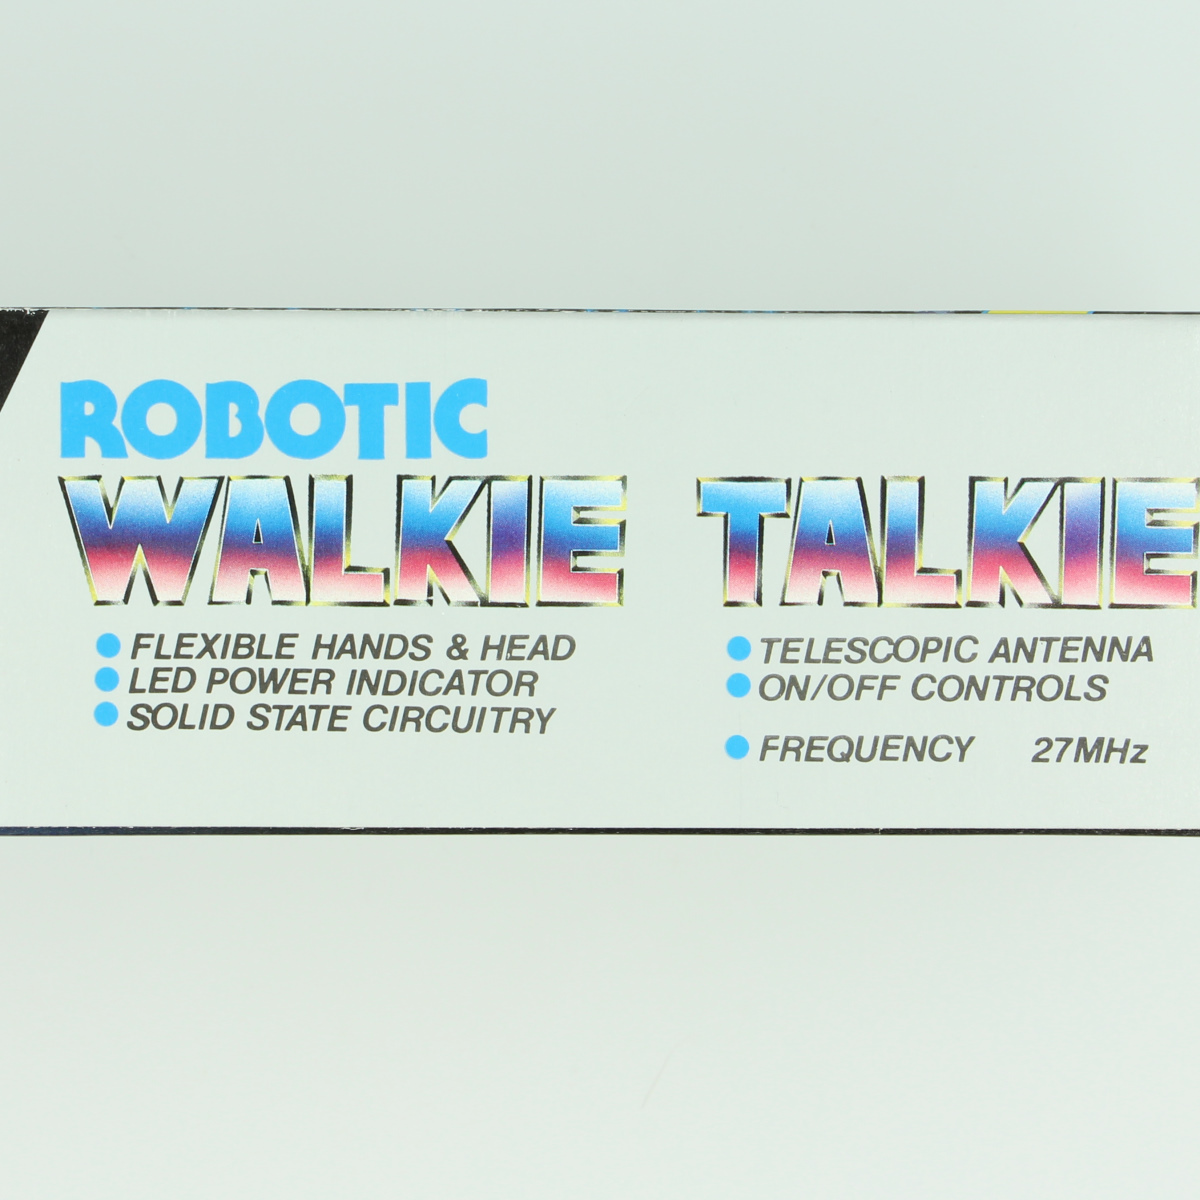 Afbeeldingen van robotic walkie talkie